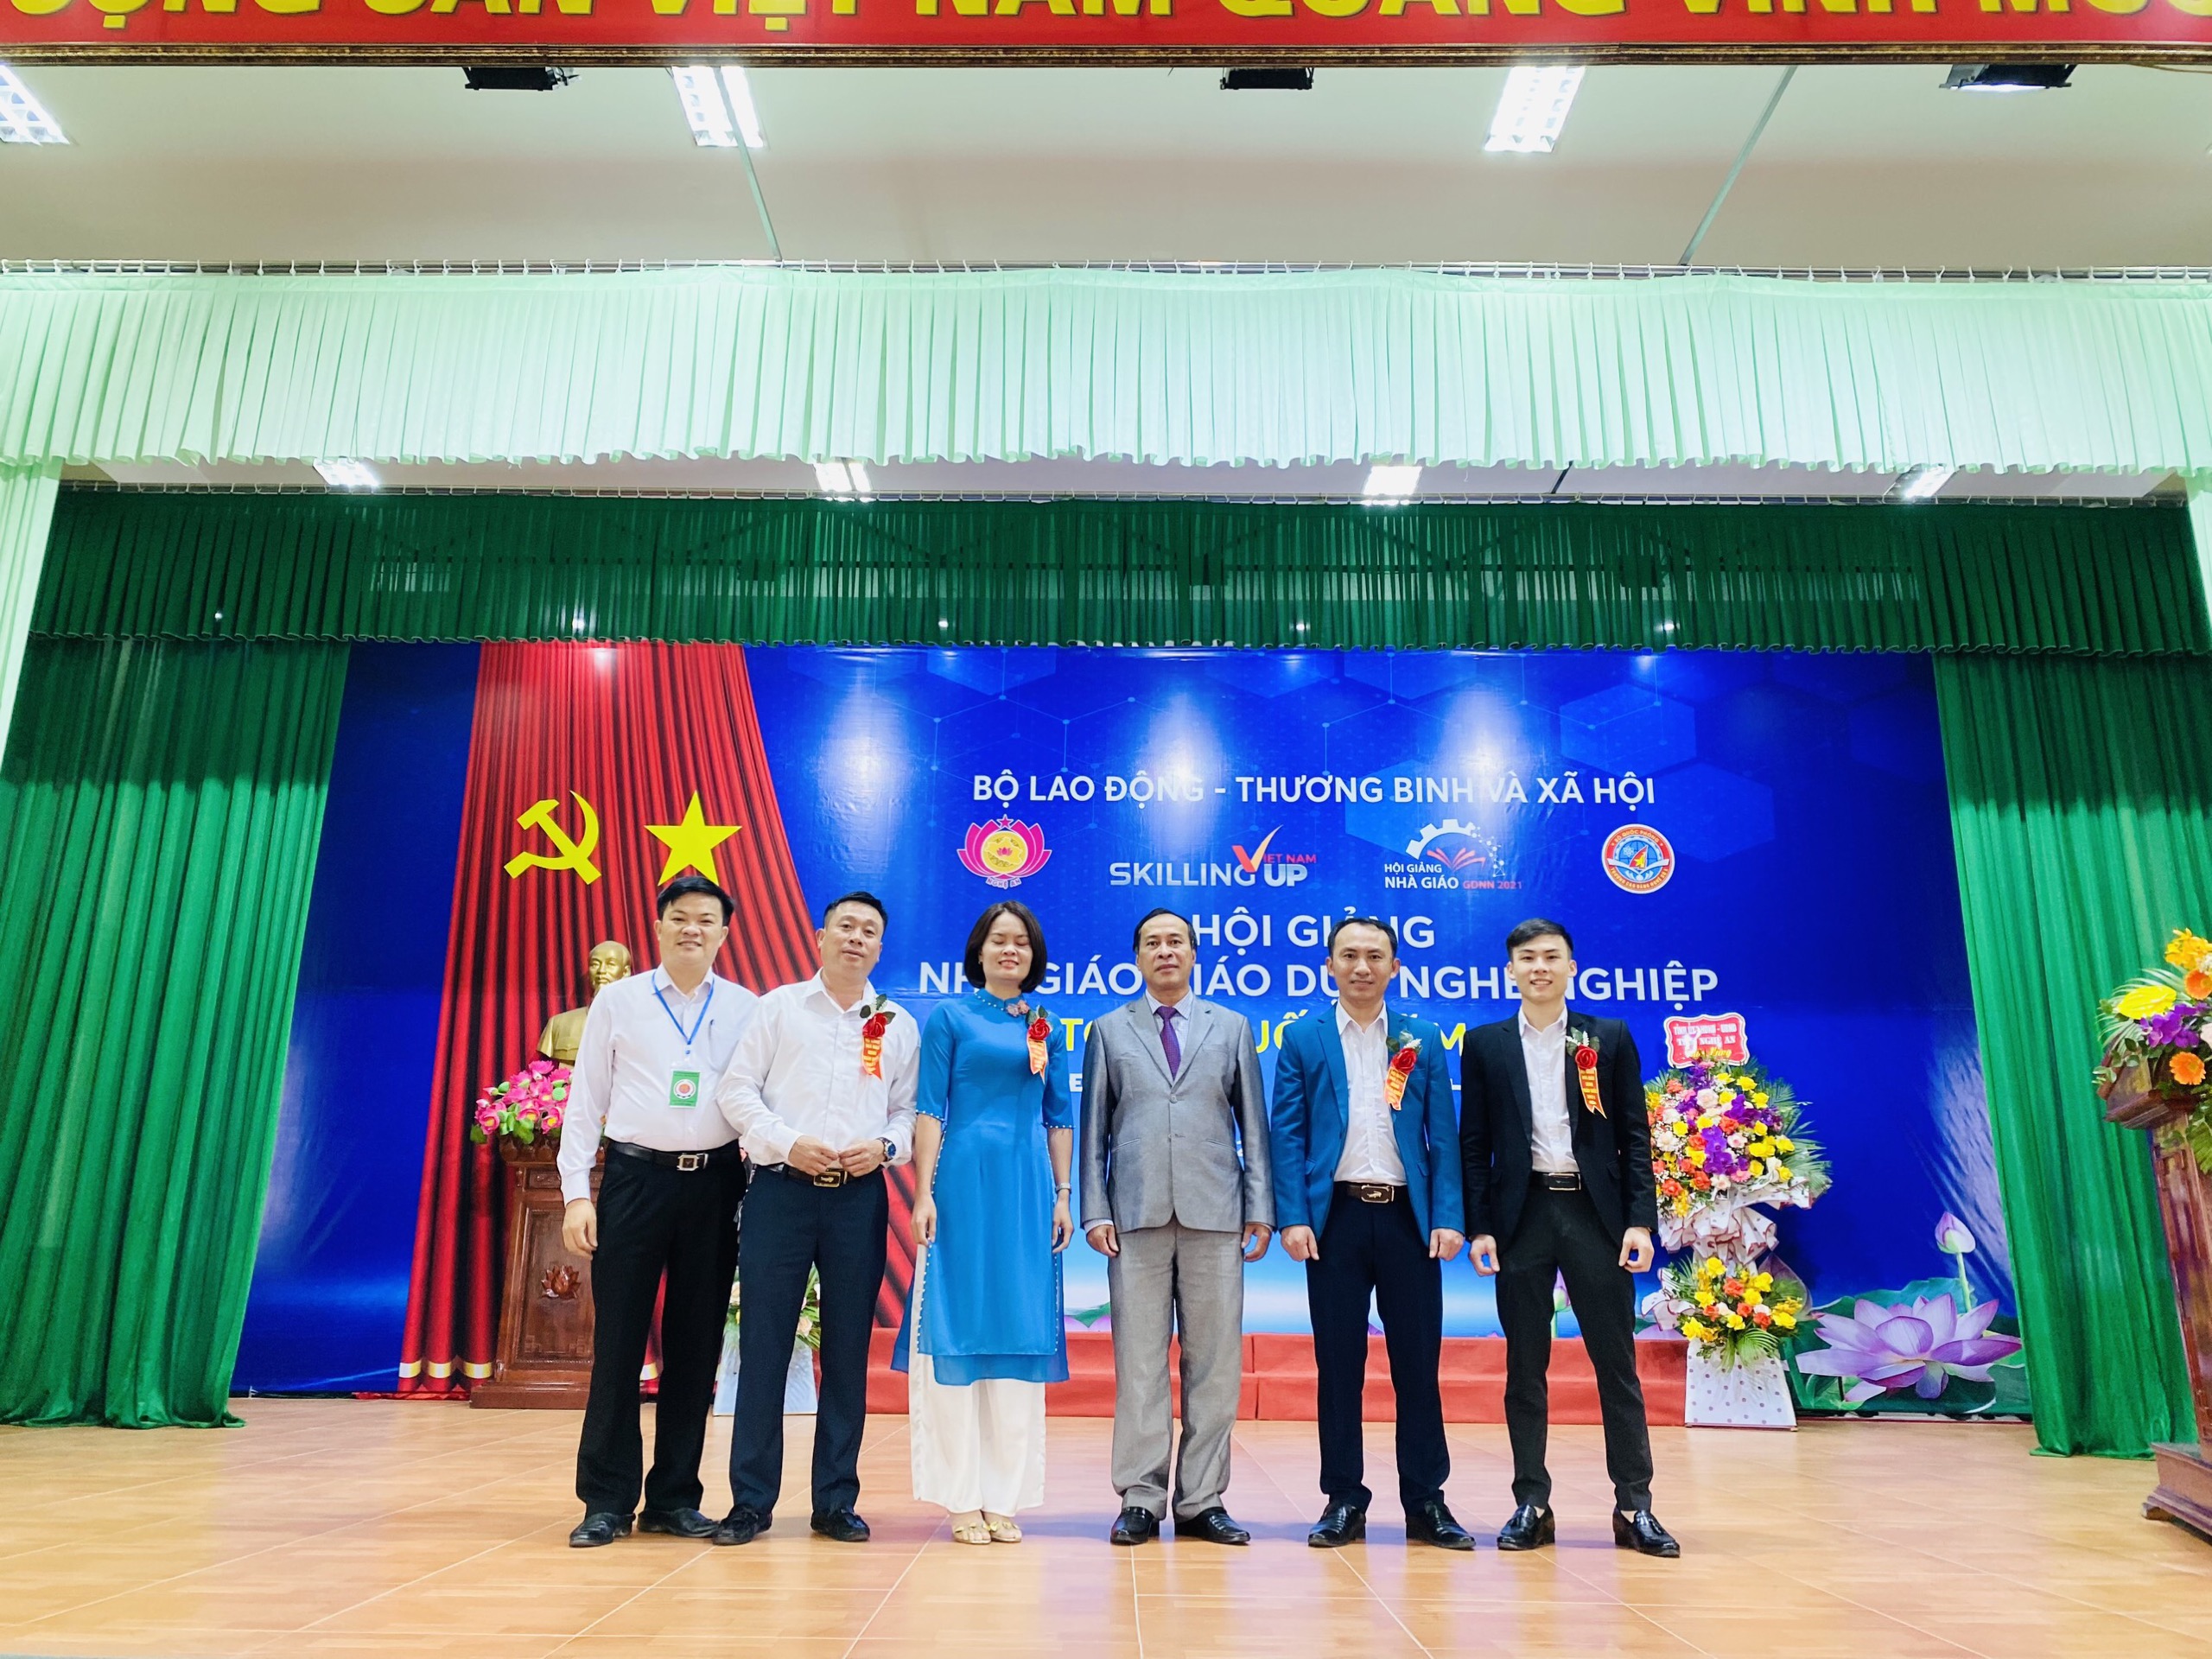 Những Nhà giáo xuất sắc của Trường Cao đẳng Việt – Đức Nghệ An tham dự Hội giảng Nhà giáo Giáo dục nghề nghiệp toàn quốc năm 2021